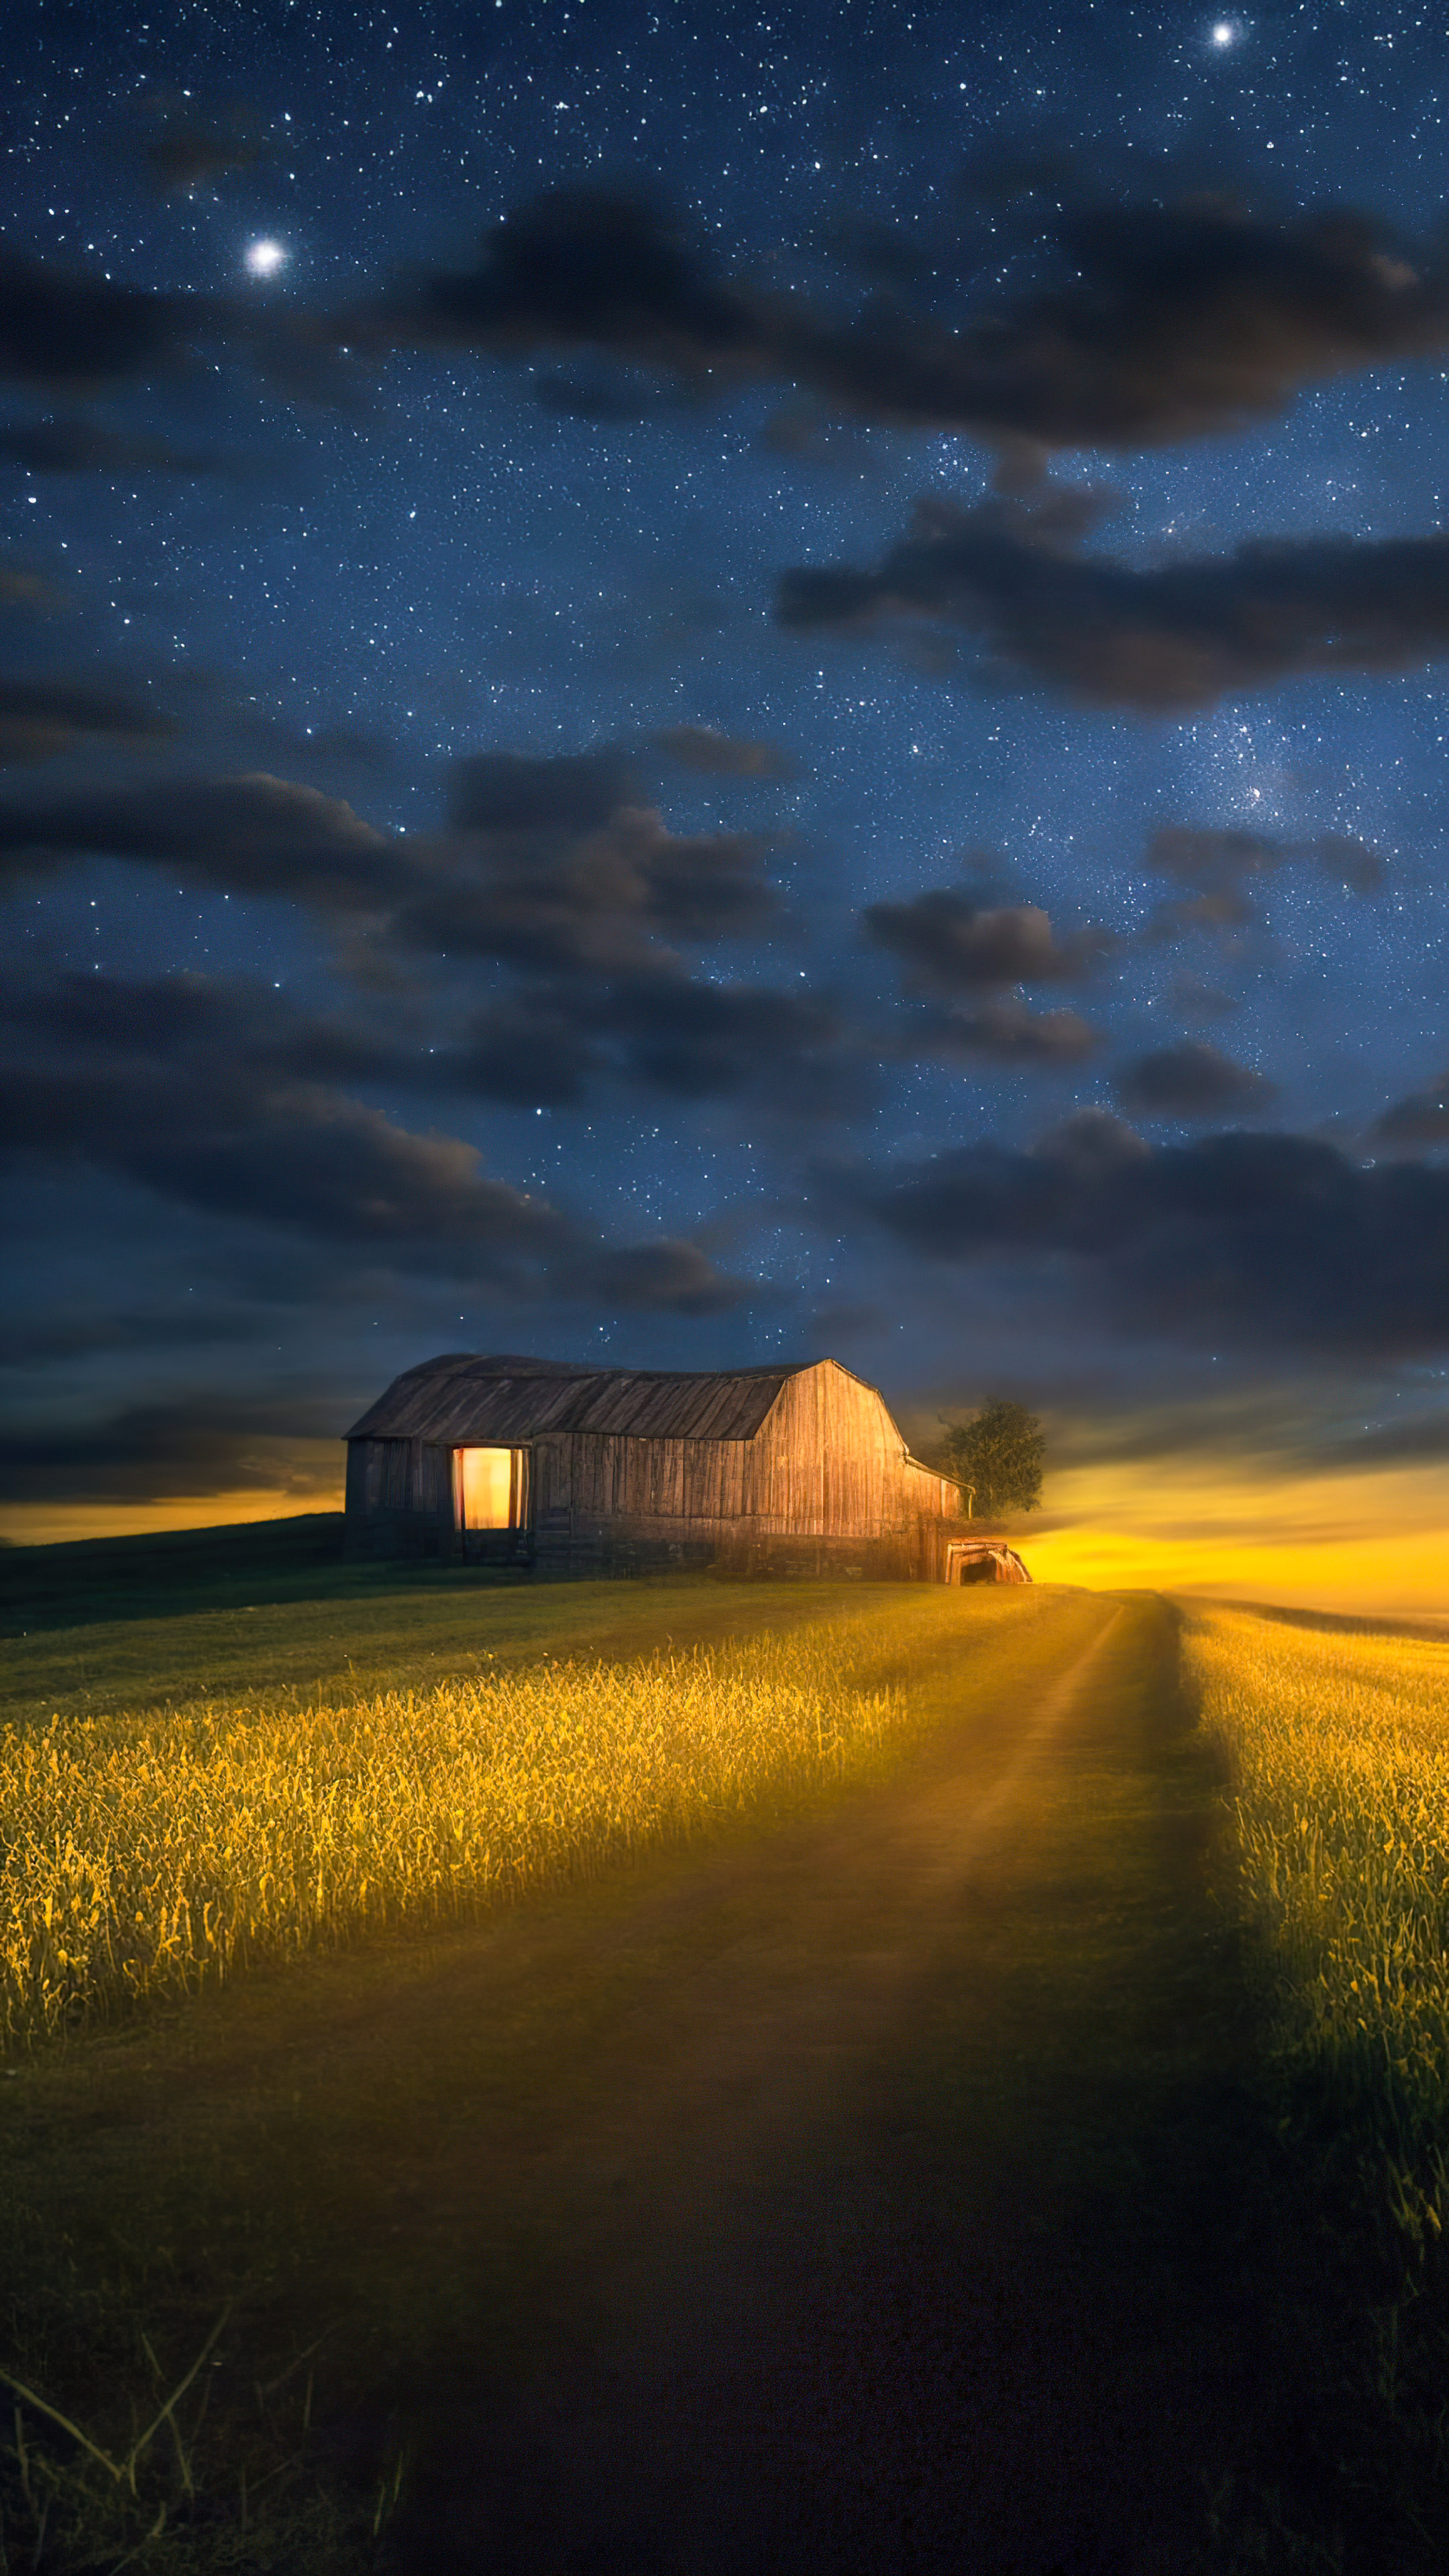 Le meilleur fond d'écran de nature en 4K pour votre mobile vous attend, présentant une scène de campagne sereine, une grange rustique, des lucioles et un ciel étoilé et clair.